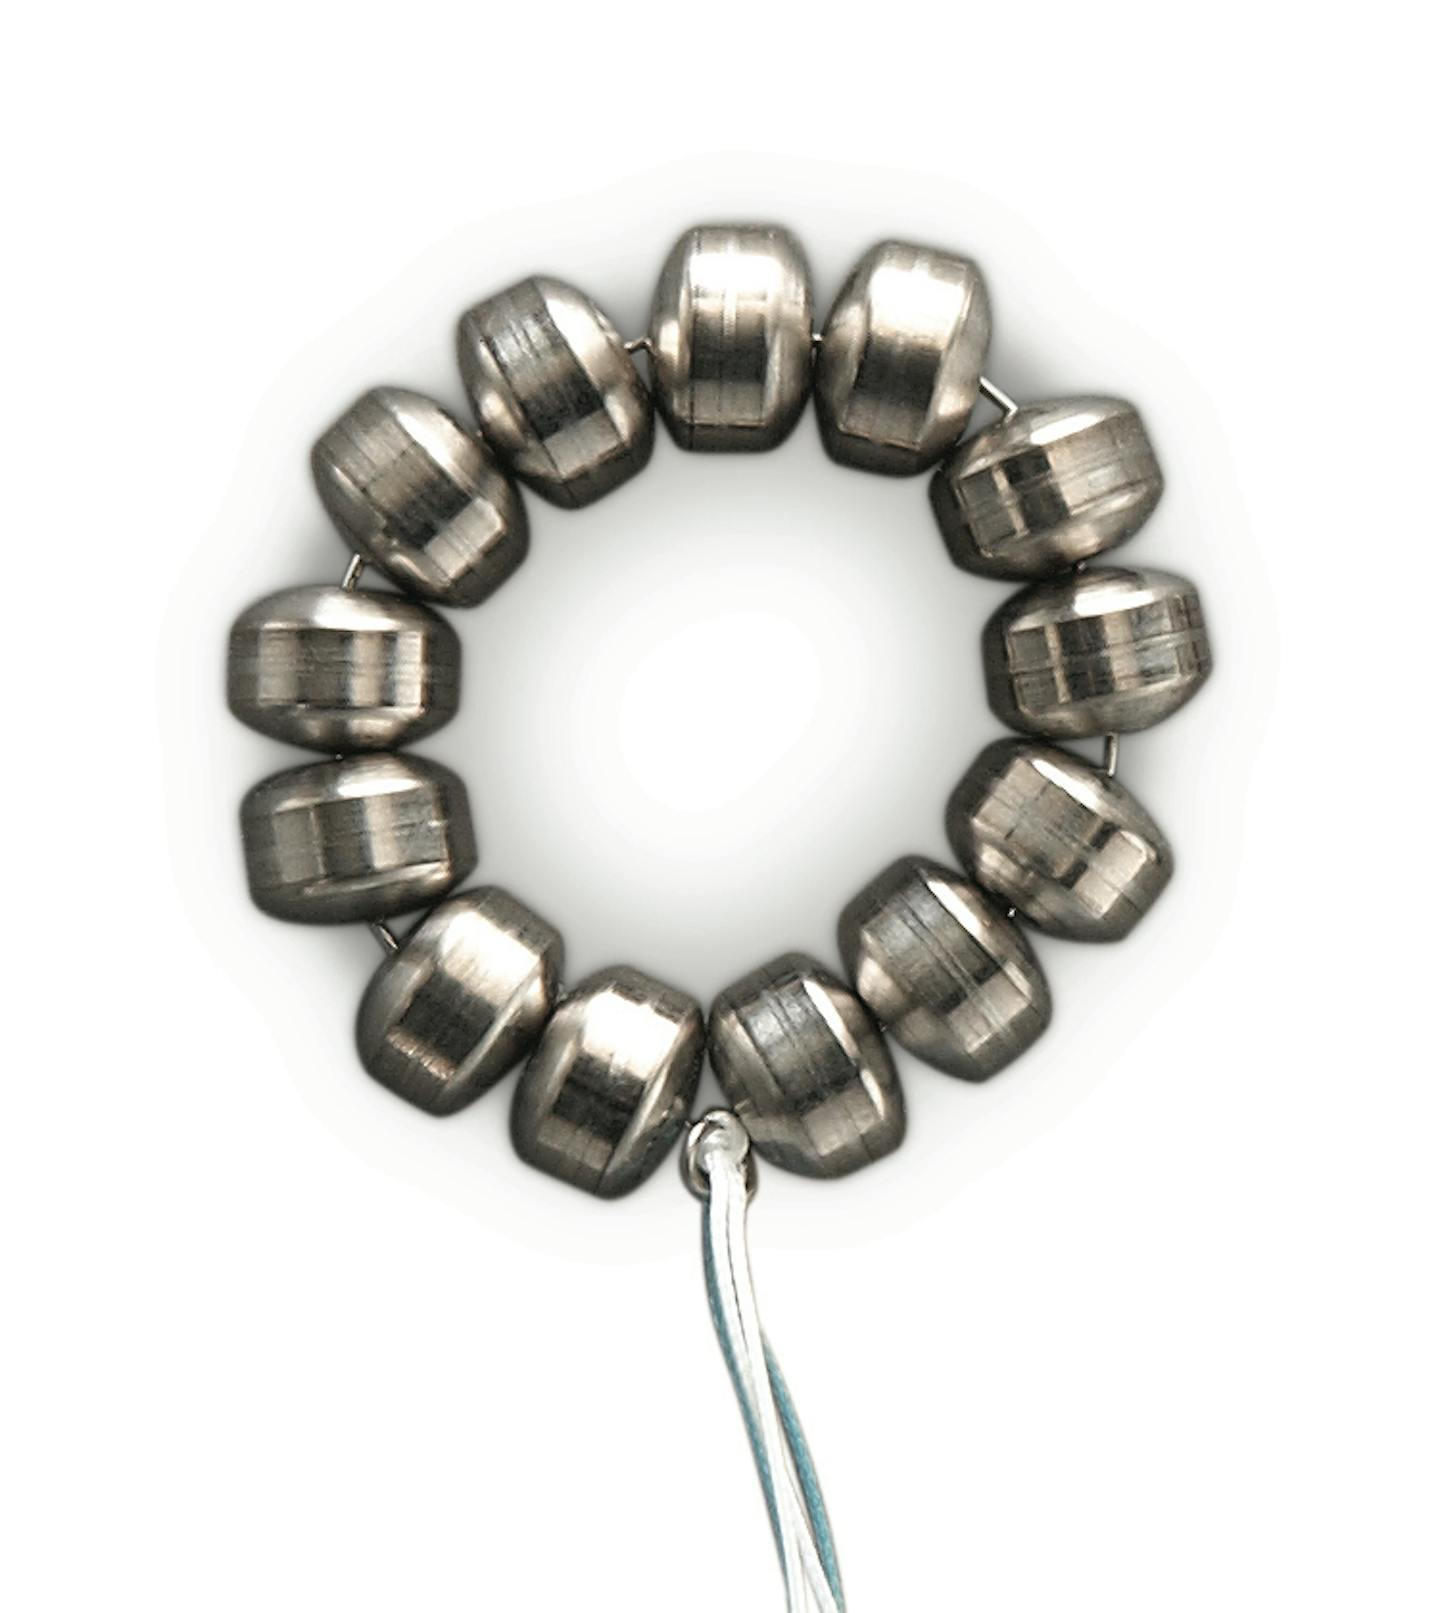 Bracelet' implant for throat giving hope to chronic heartburn sufferers |  CTV News